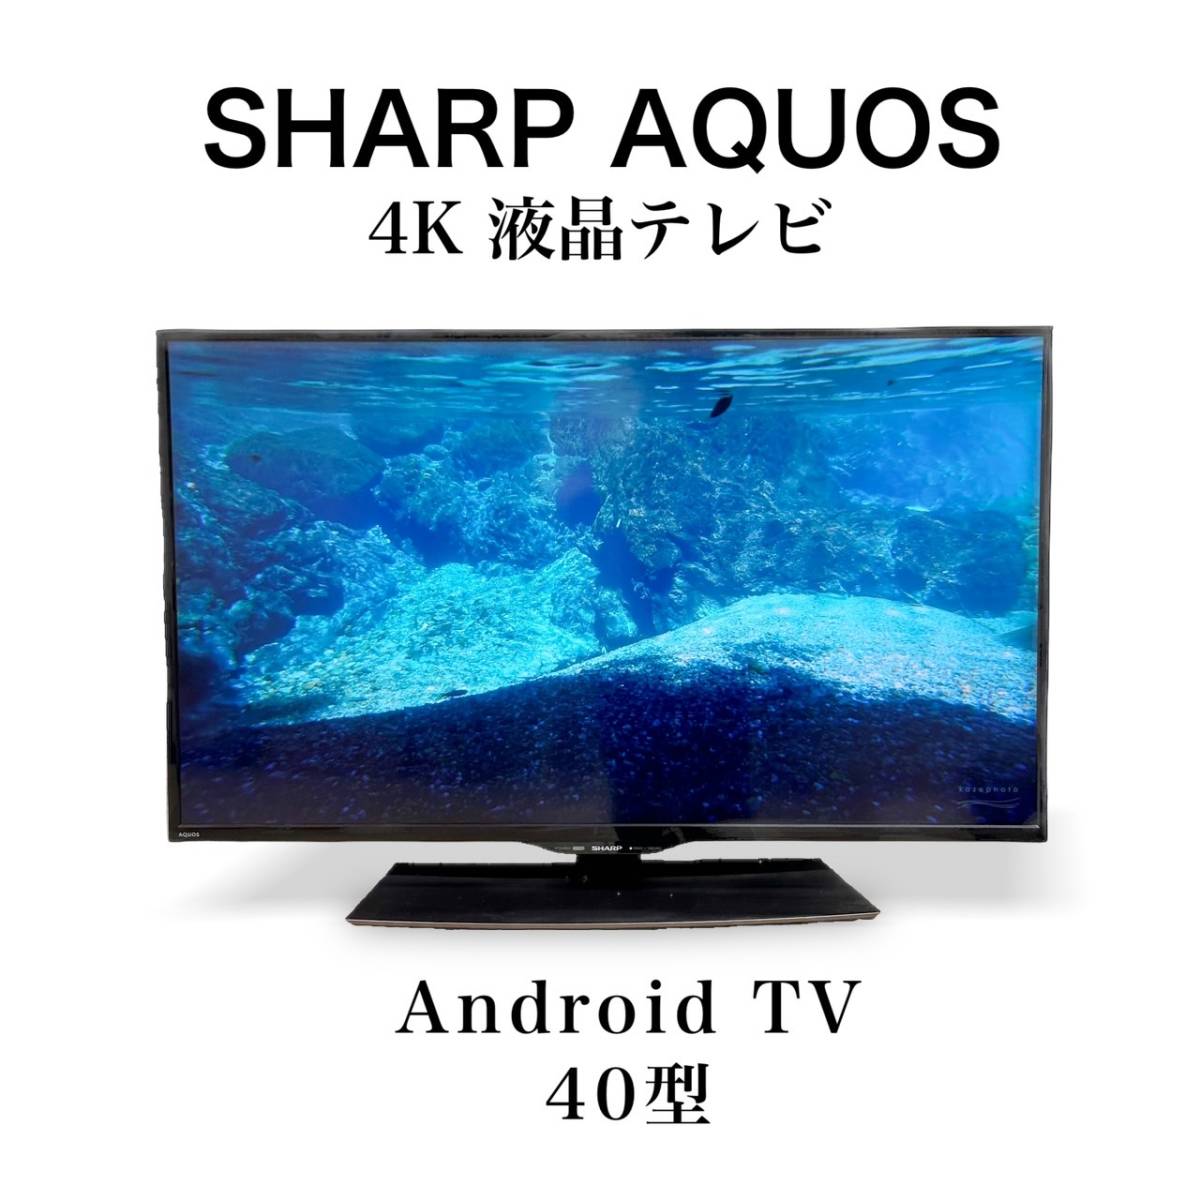 SHARP 40型液晶テレビ AQUOS シャープ アクオス 2010年 - テレビ